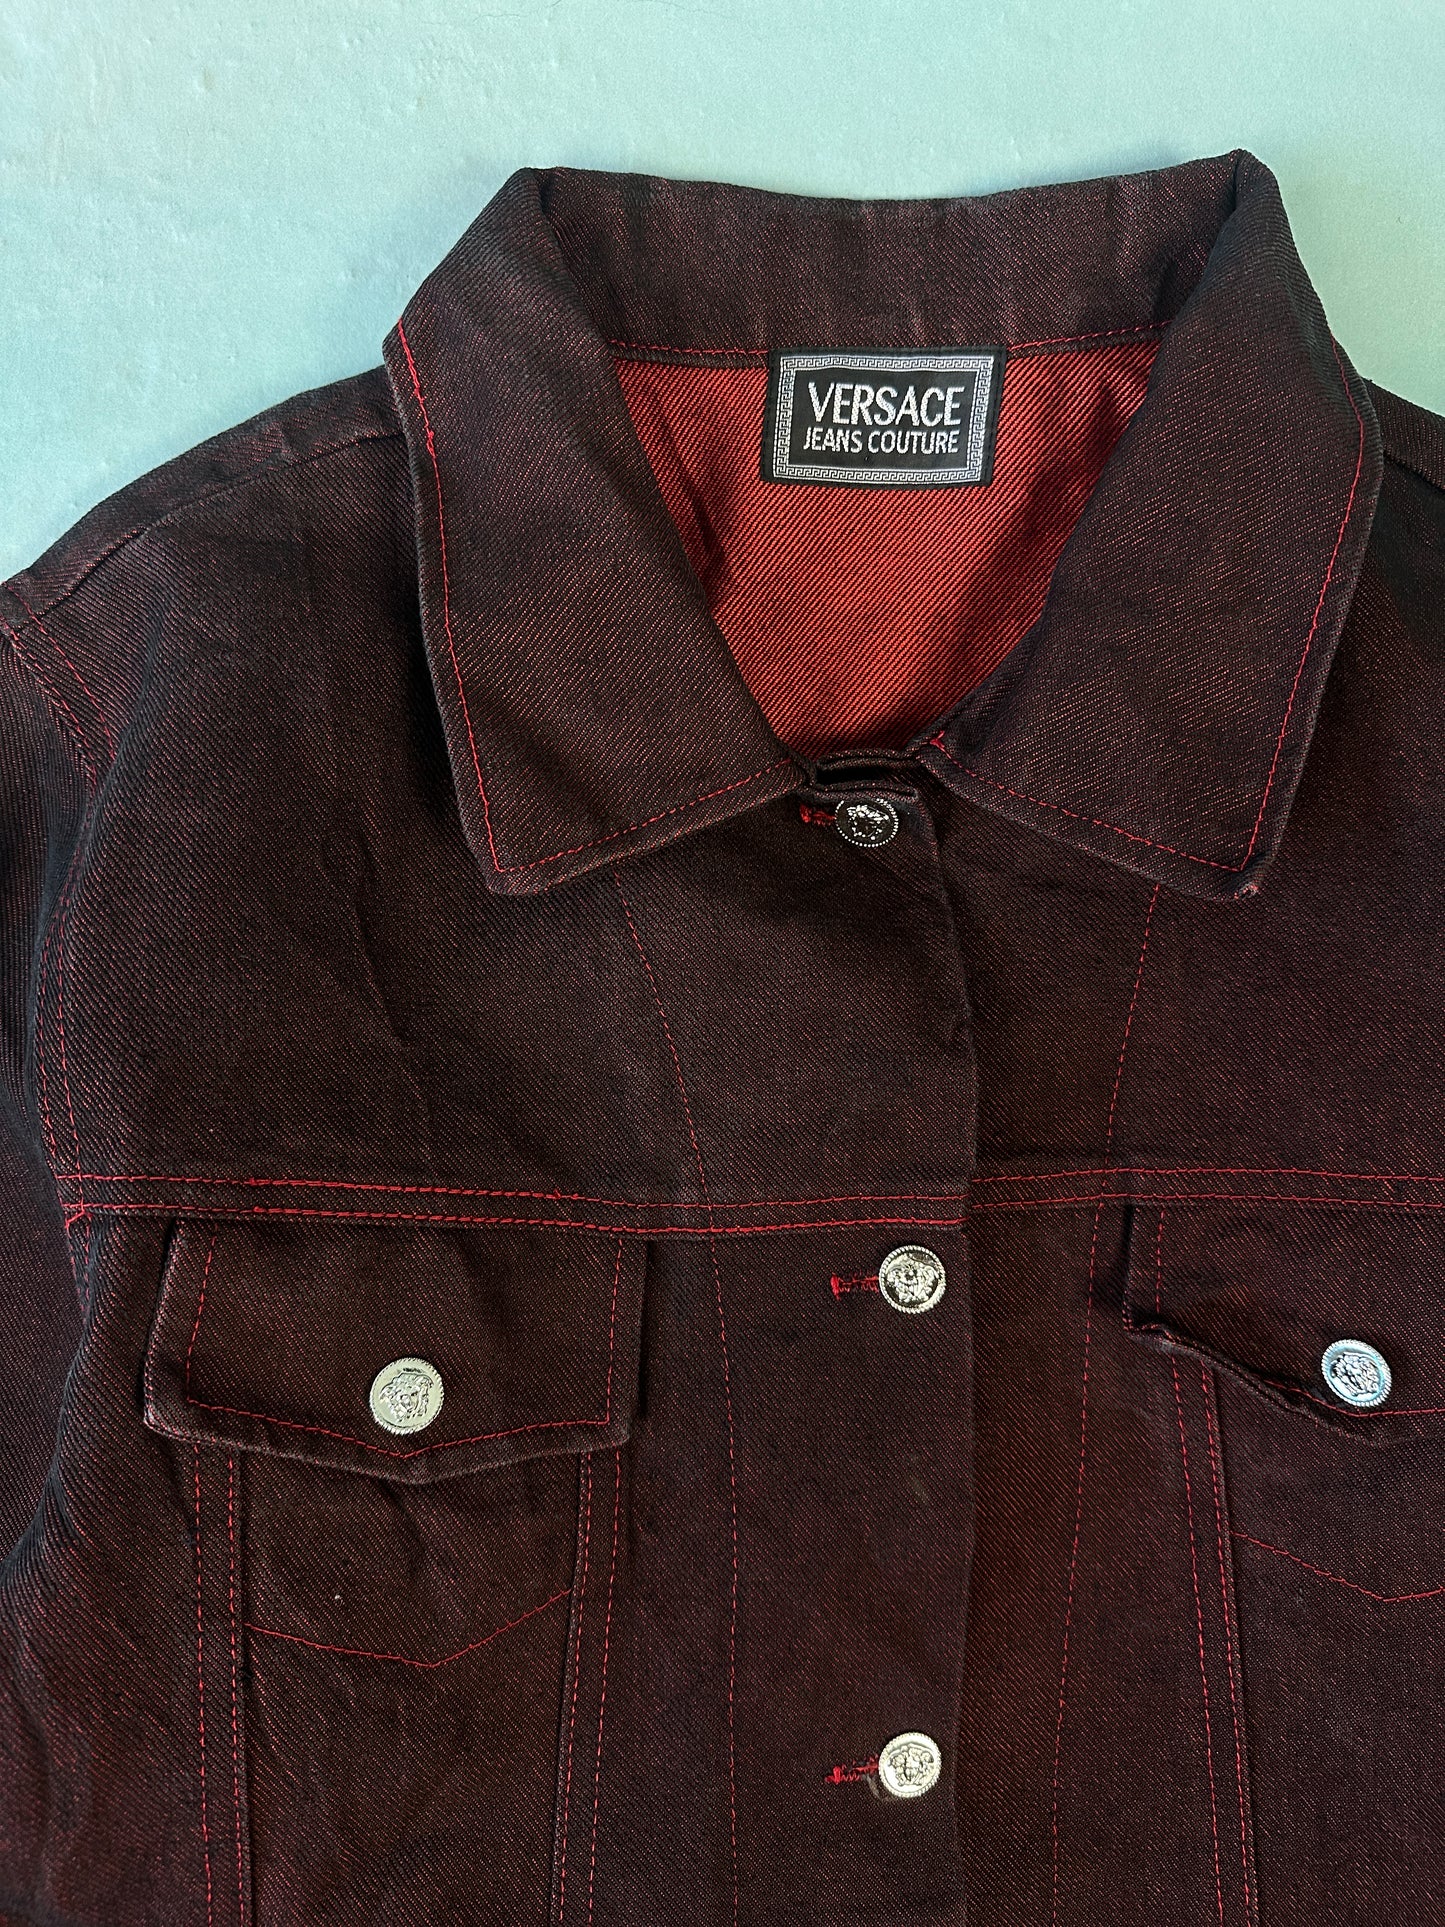 Versace Red Denim Vintage Jacket - M